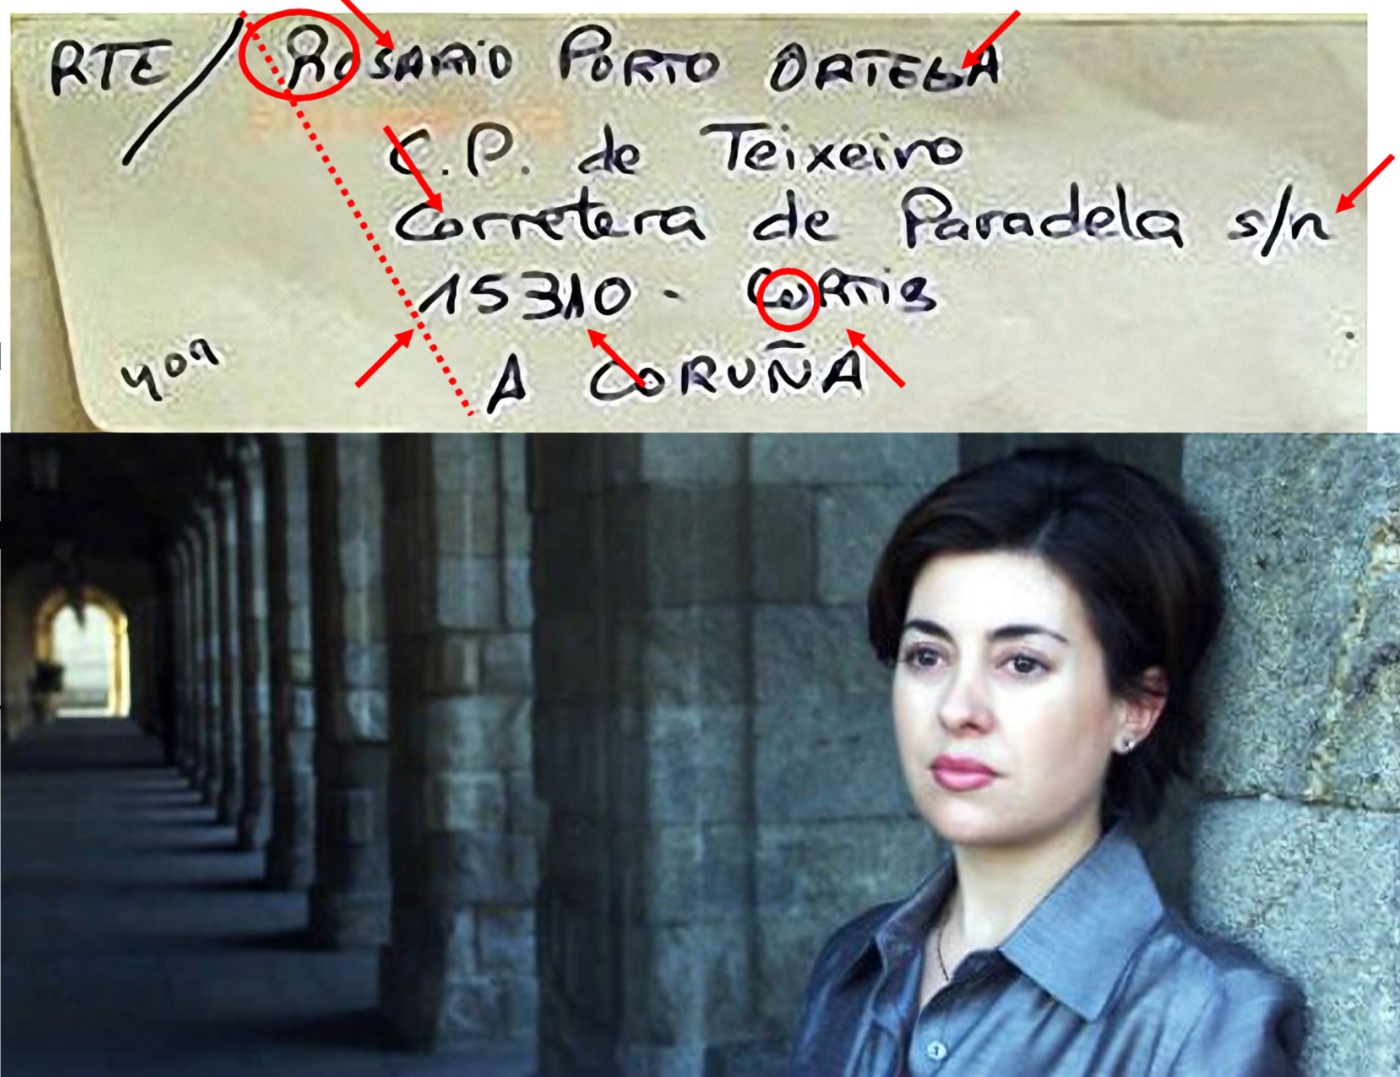 Los brujos grafólogos fantasean sobre la letra de Rosario Porto, y algunos lo venden como noticia